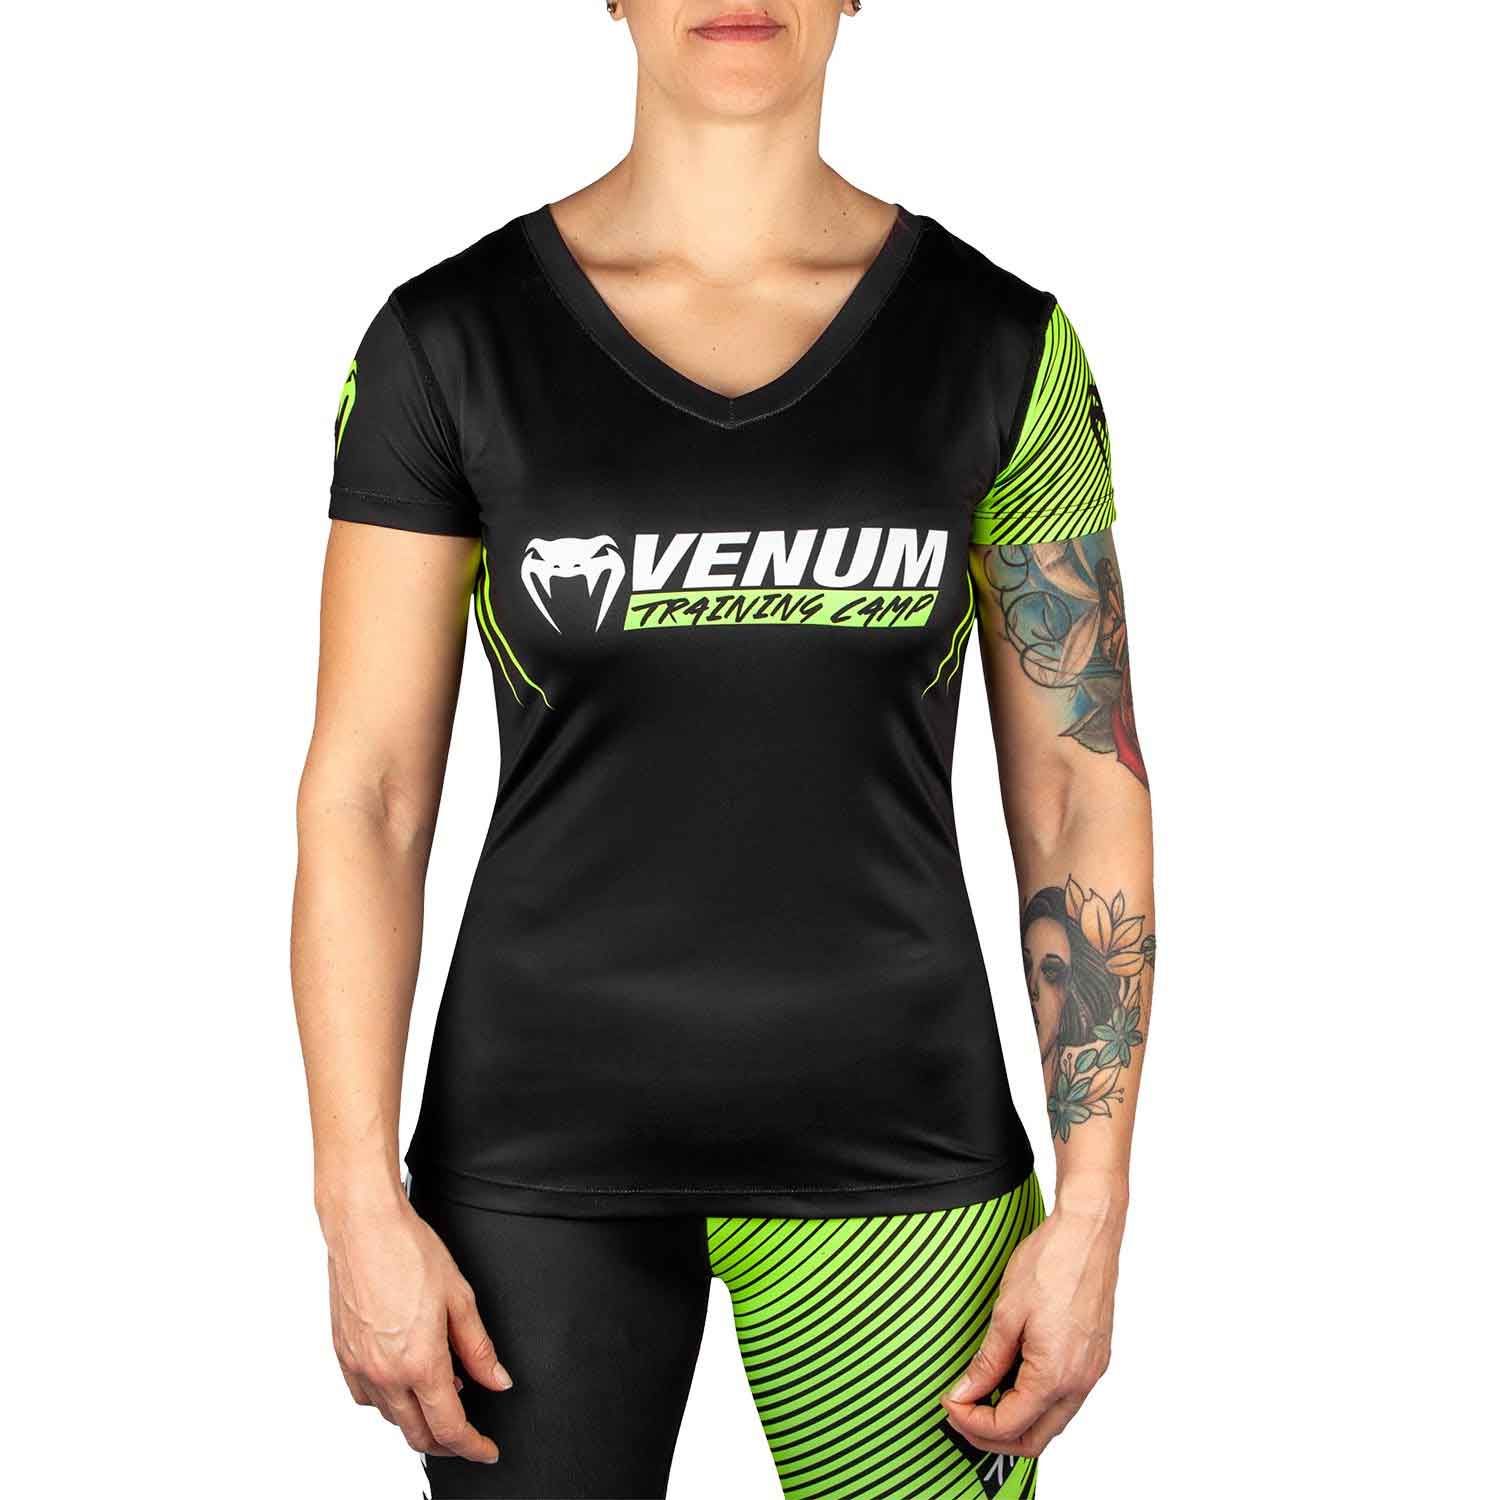 VENUM/ヴェナム TRAINING CAMP 2.0 WOMEN T-SHIRT／トレーニング・キャンプ 2.0 レディース Tシャツ